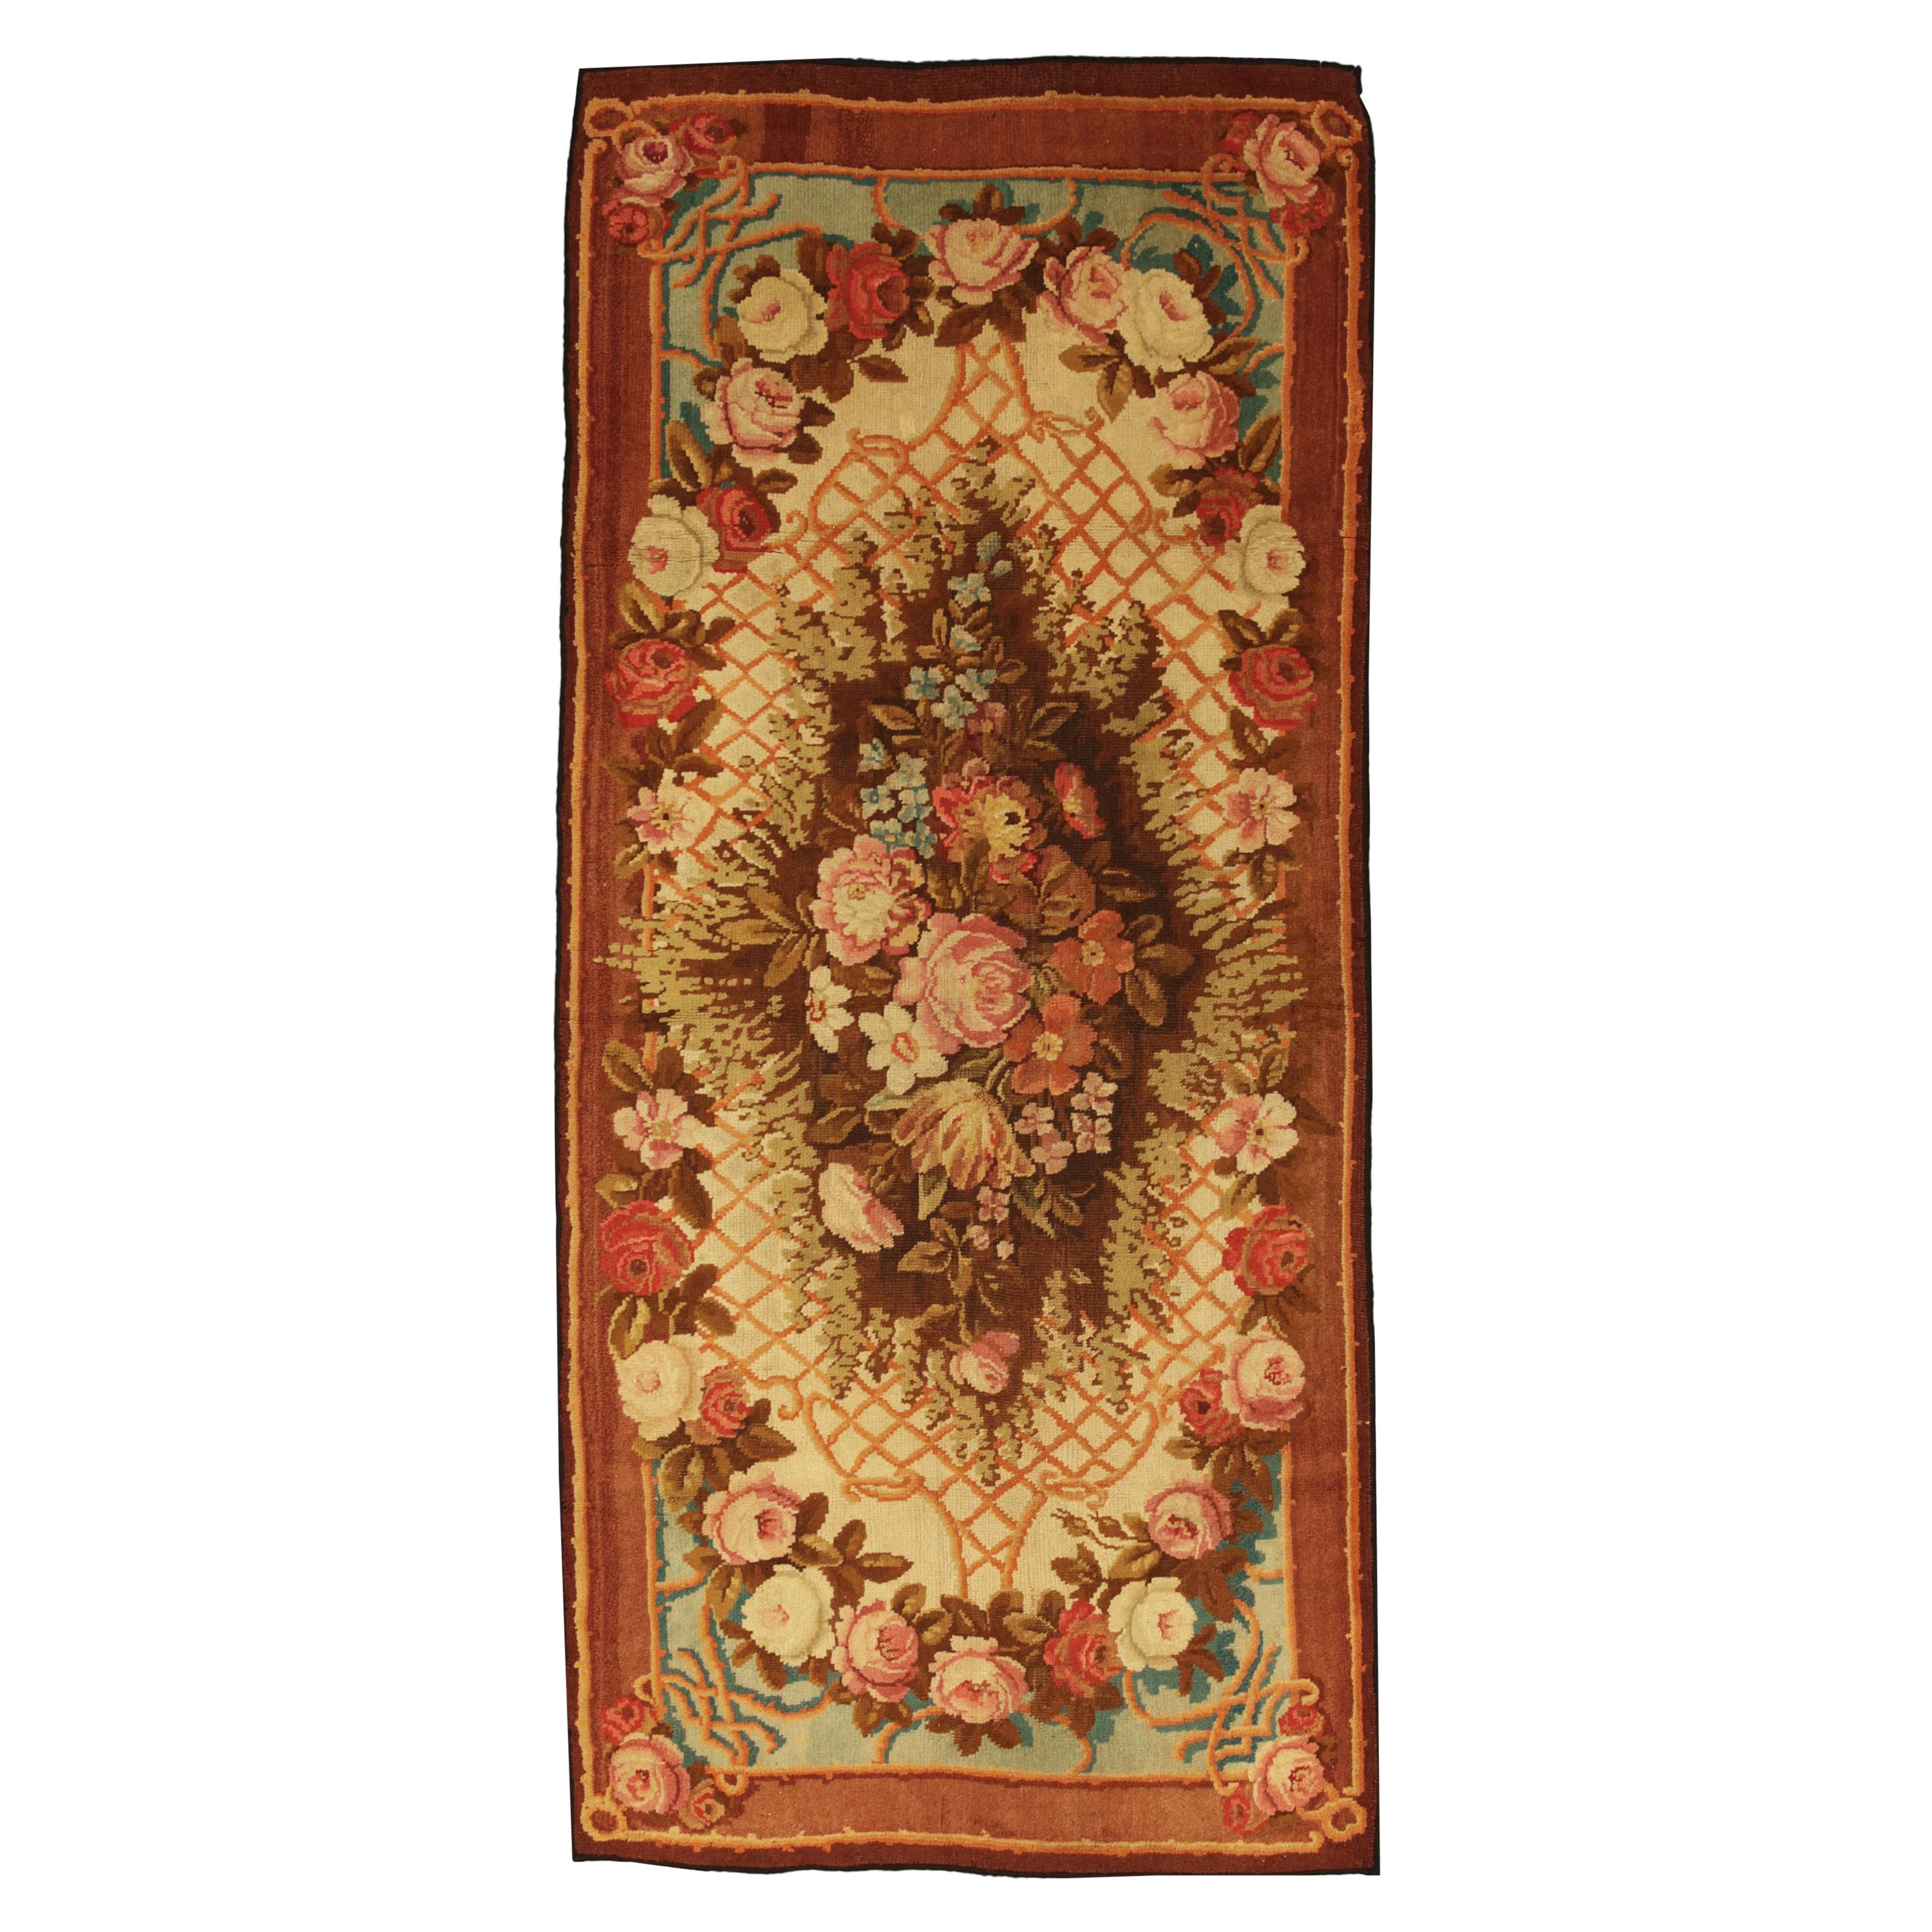 Axminster-Teppich, mehrfarbiges, geblümtes Design, um 1880